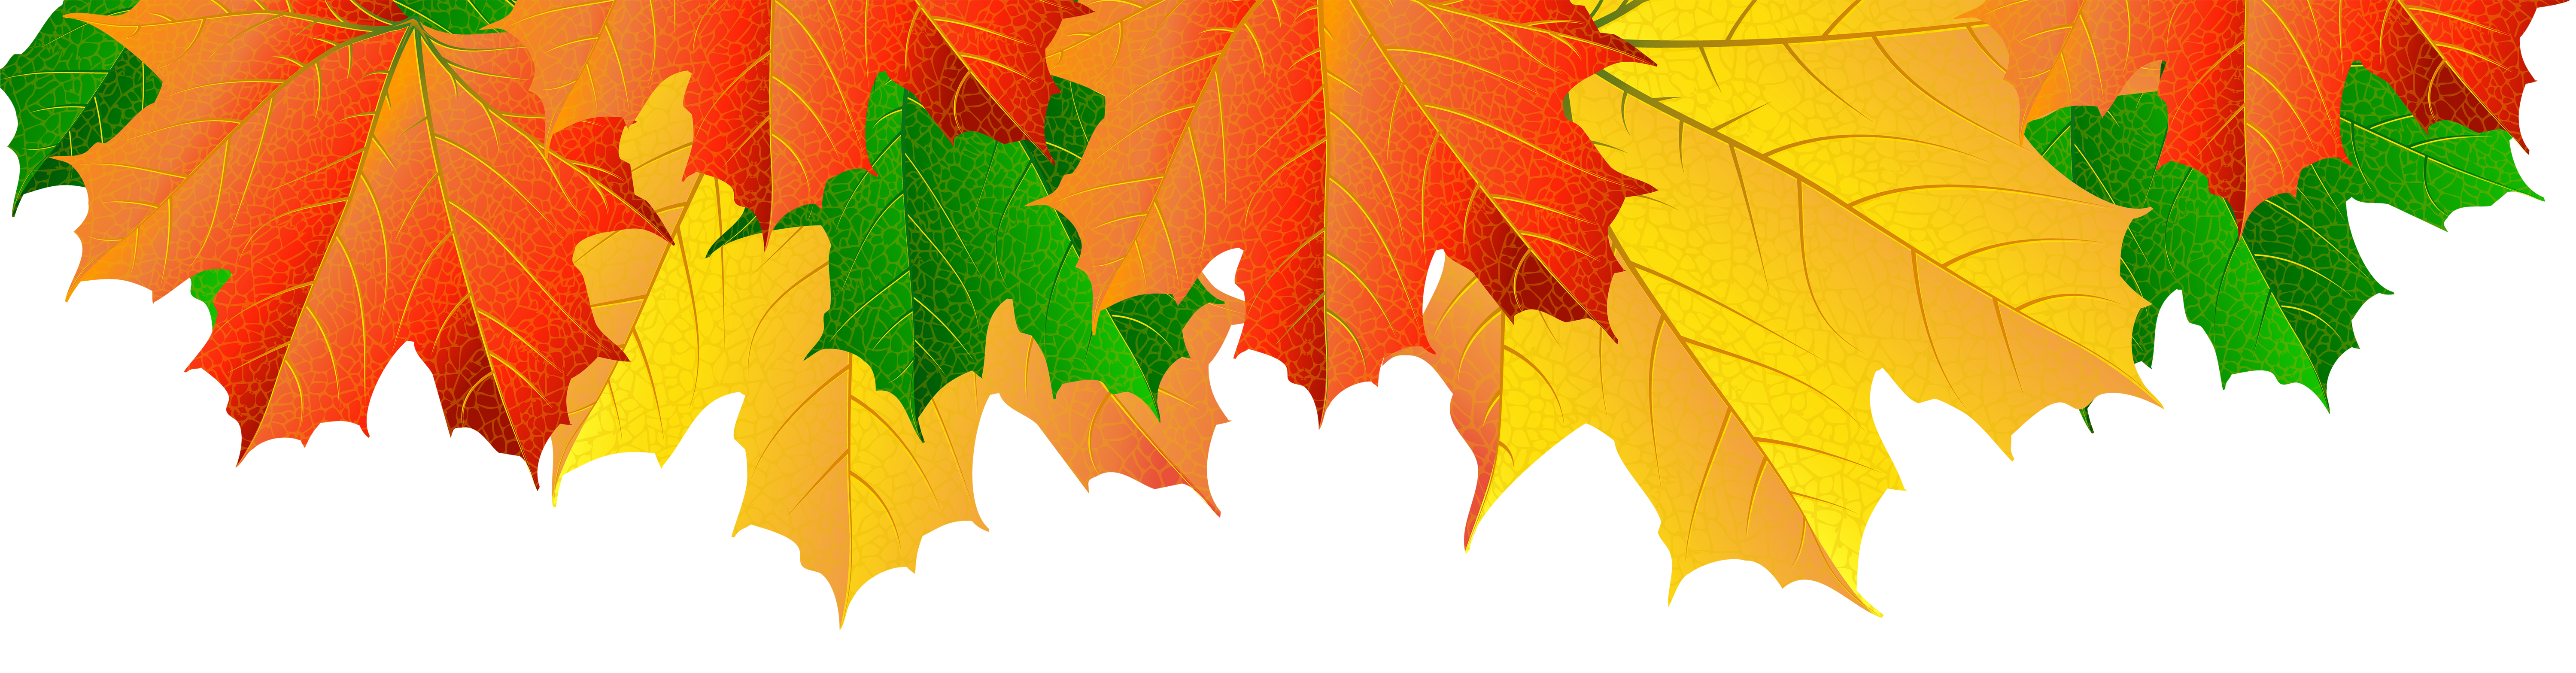 Полоска из осенних листьев на прозрачном фоне фото